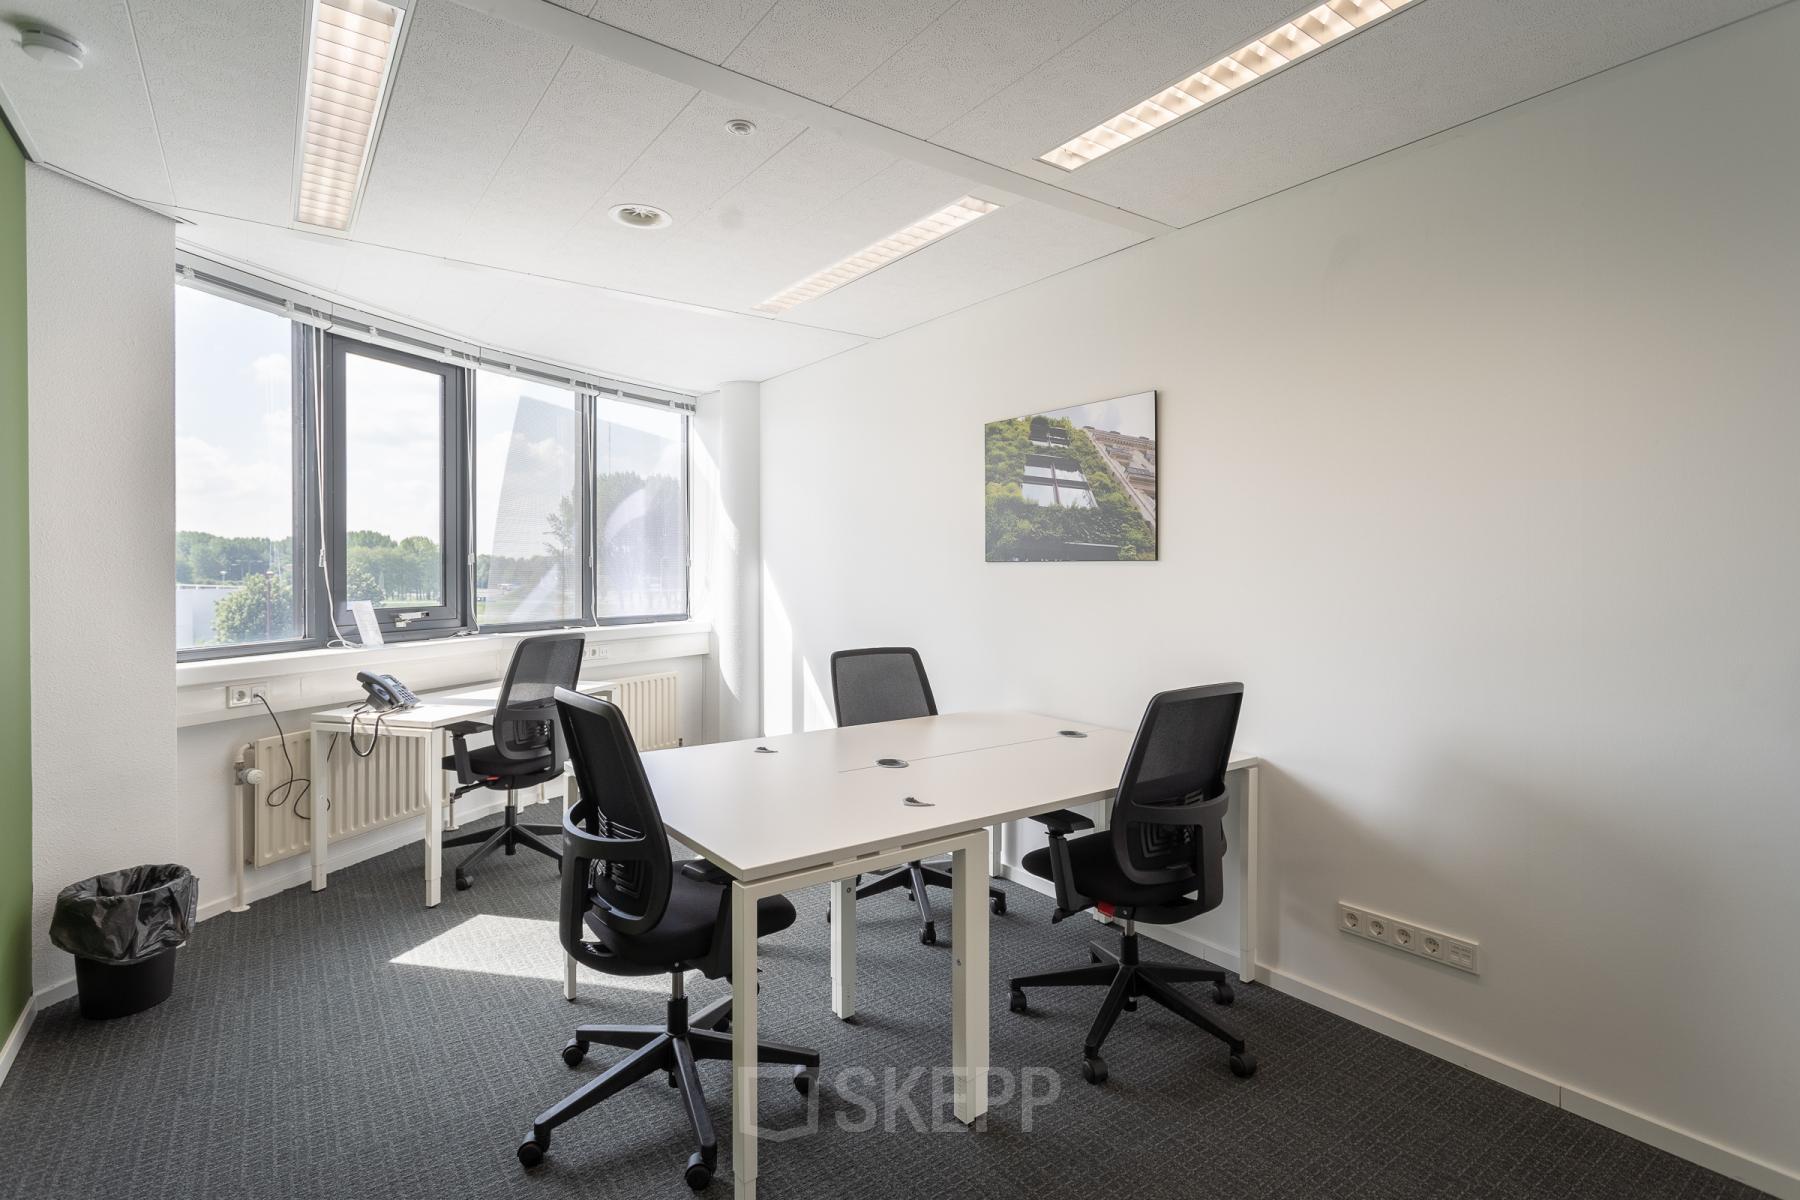 Rent office space Nevelgaarde 8, Nieuwegein (1)